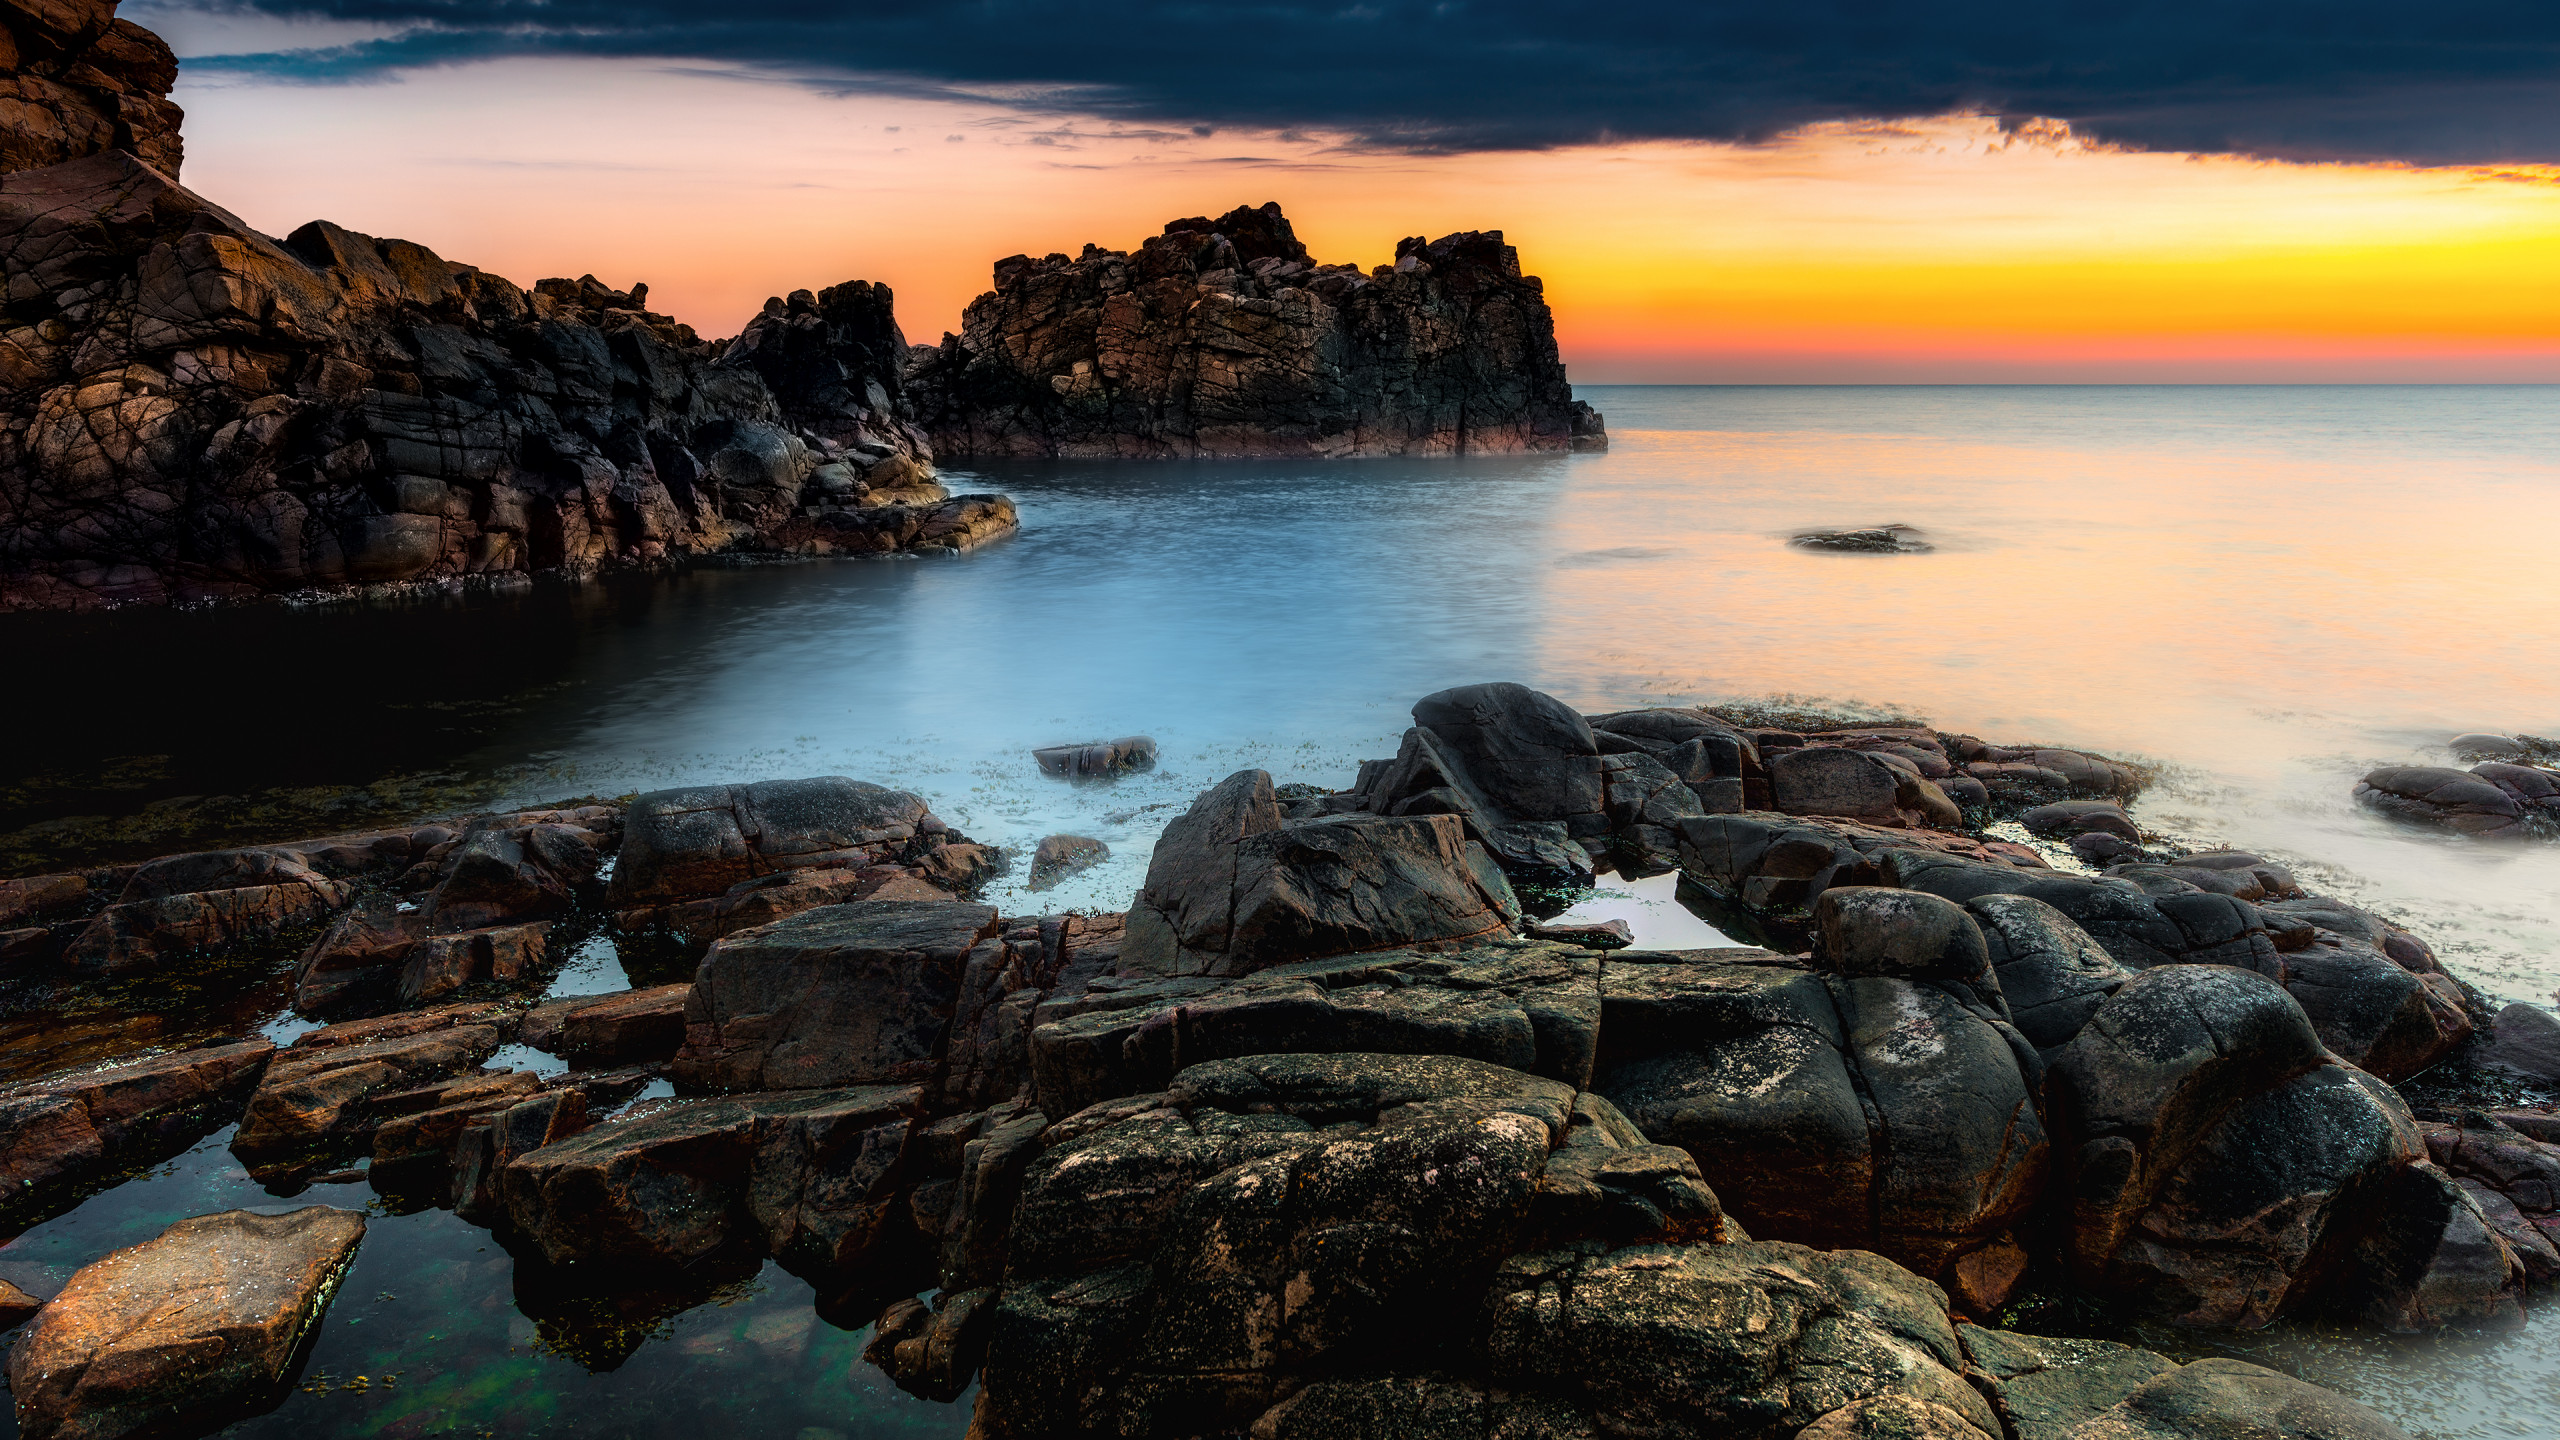 Hình nền Hovs Hallar 4k, 5k, bãi biển Thụy Điển sẽ cho bạn một cảm giác đang đứng ngay giữa nơi giao thoa giữa đất và biển. Với những bãi đá hoang sơ và một khung cảnh ngoạn mục, bức ảnh này sẽ mang đến cho bạn một trải nghiệm khó quên và đầy cảm hứng.